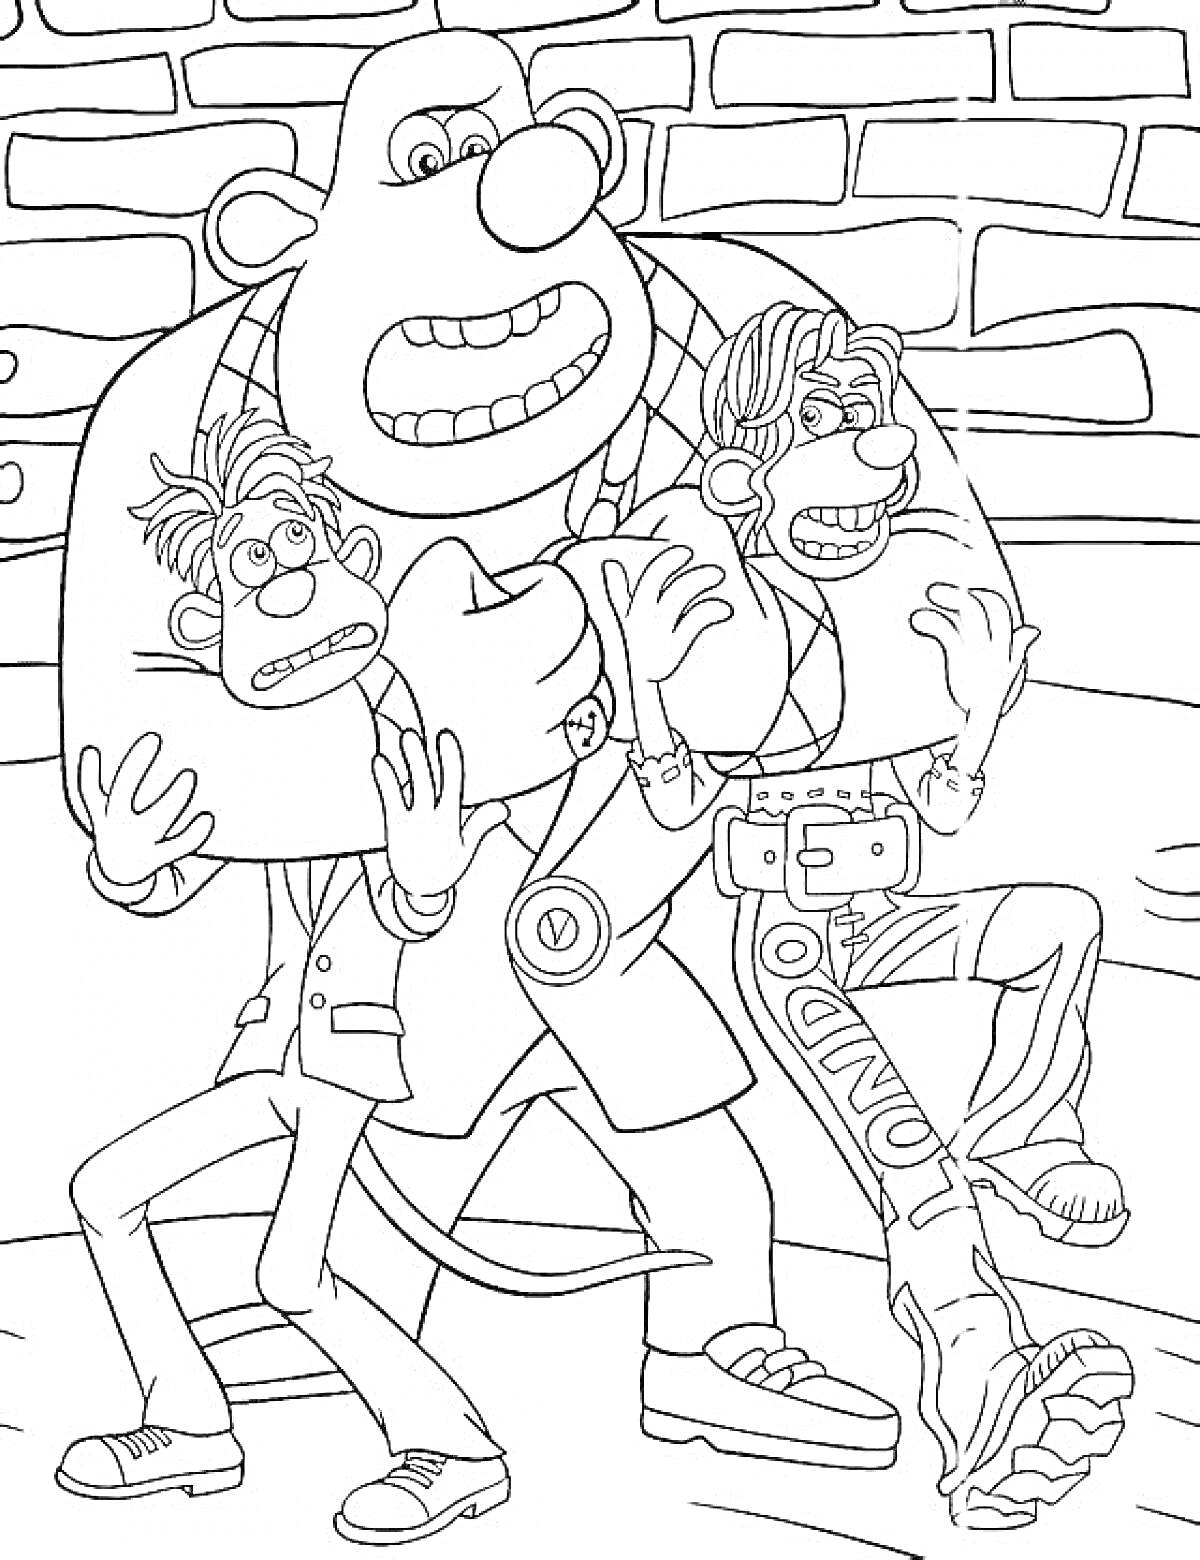 Раскраска Два испуганных персонажа в костюмах и высоких ботинках в заложниках у большого мышиного гангстера, кирпичная стена на заднем плане.